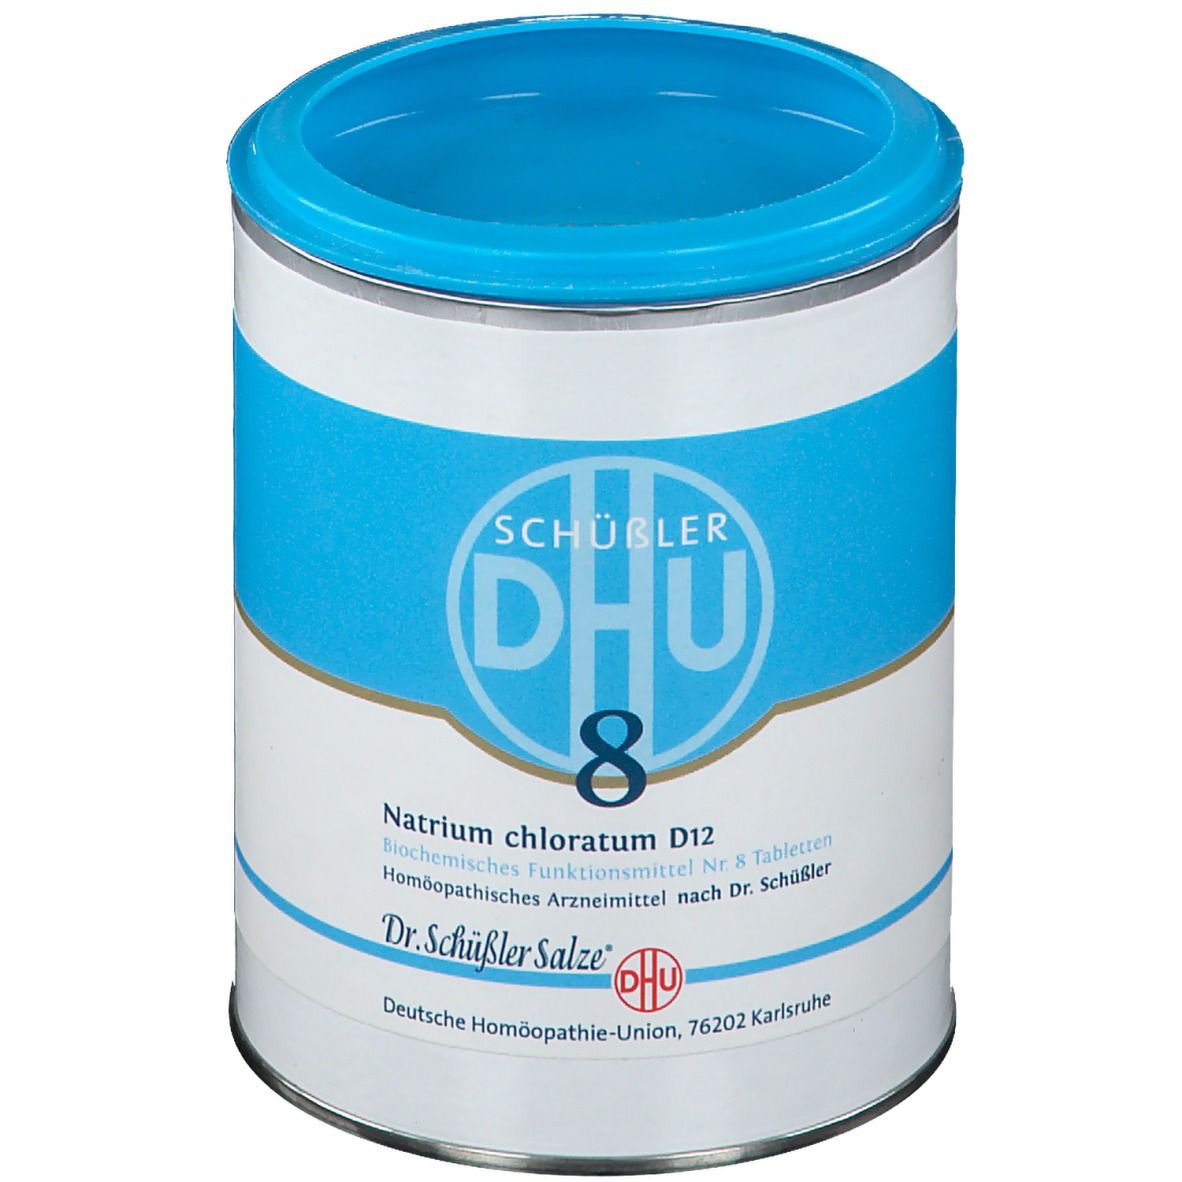 DHU Biochemie 8 Natrium chloratum D12